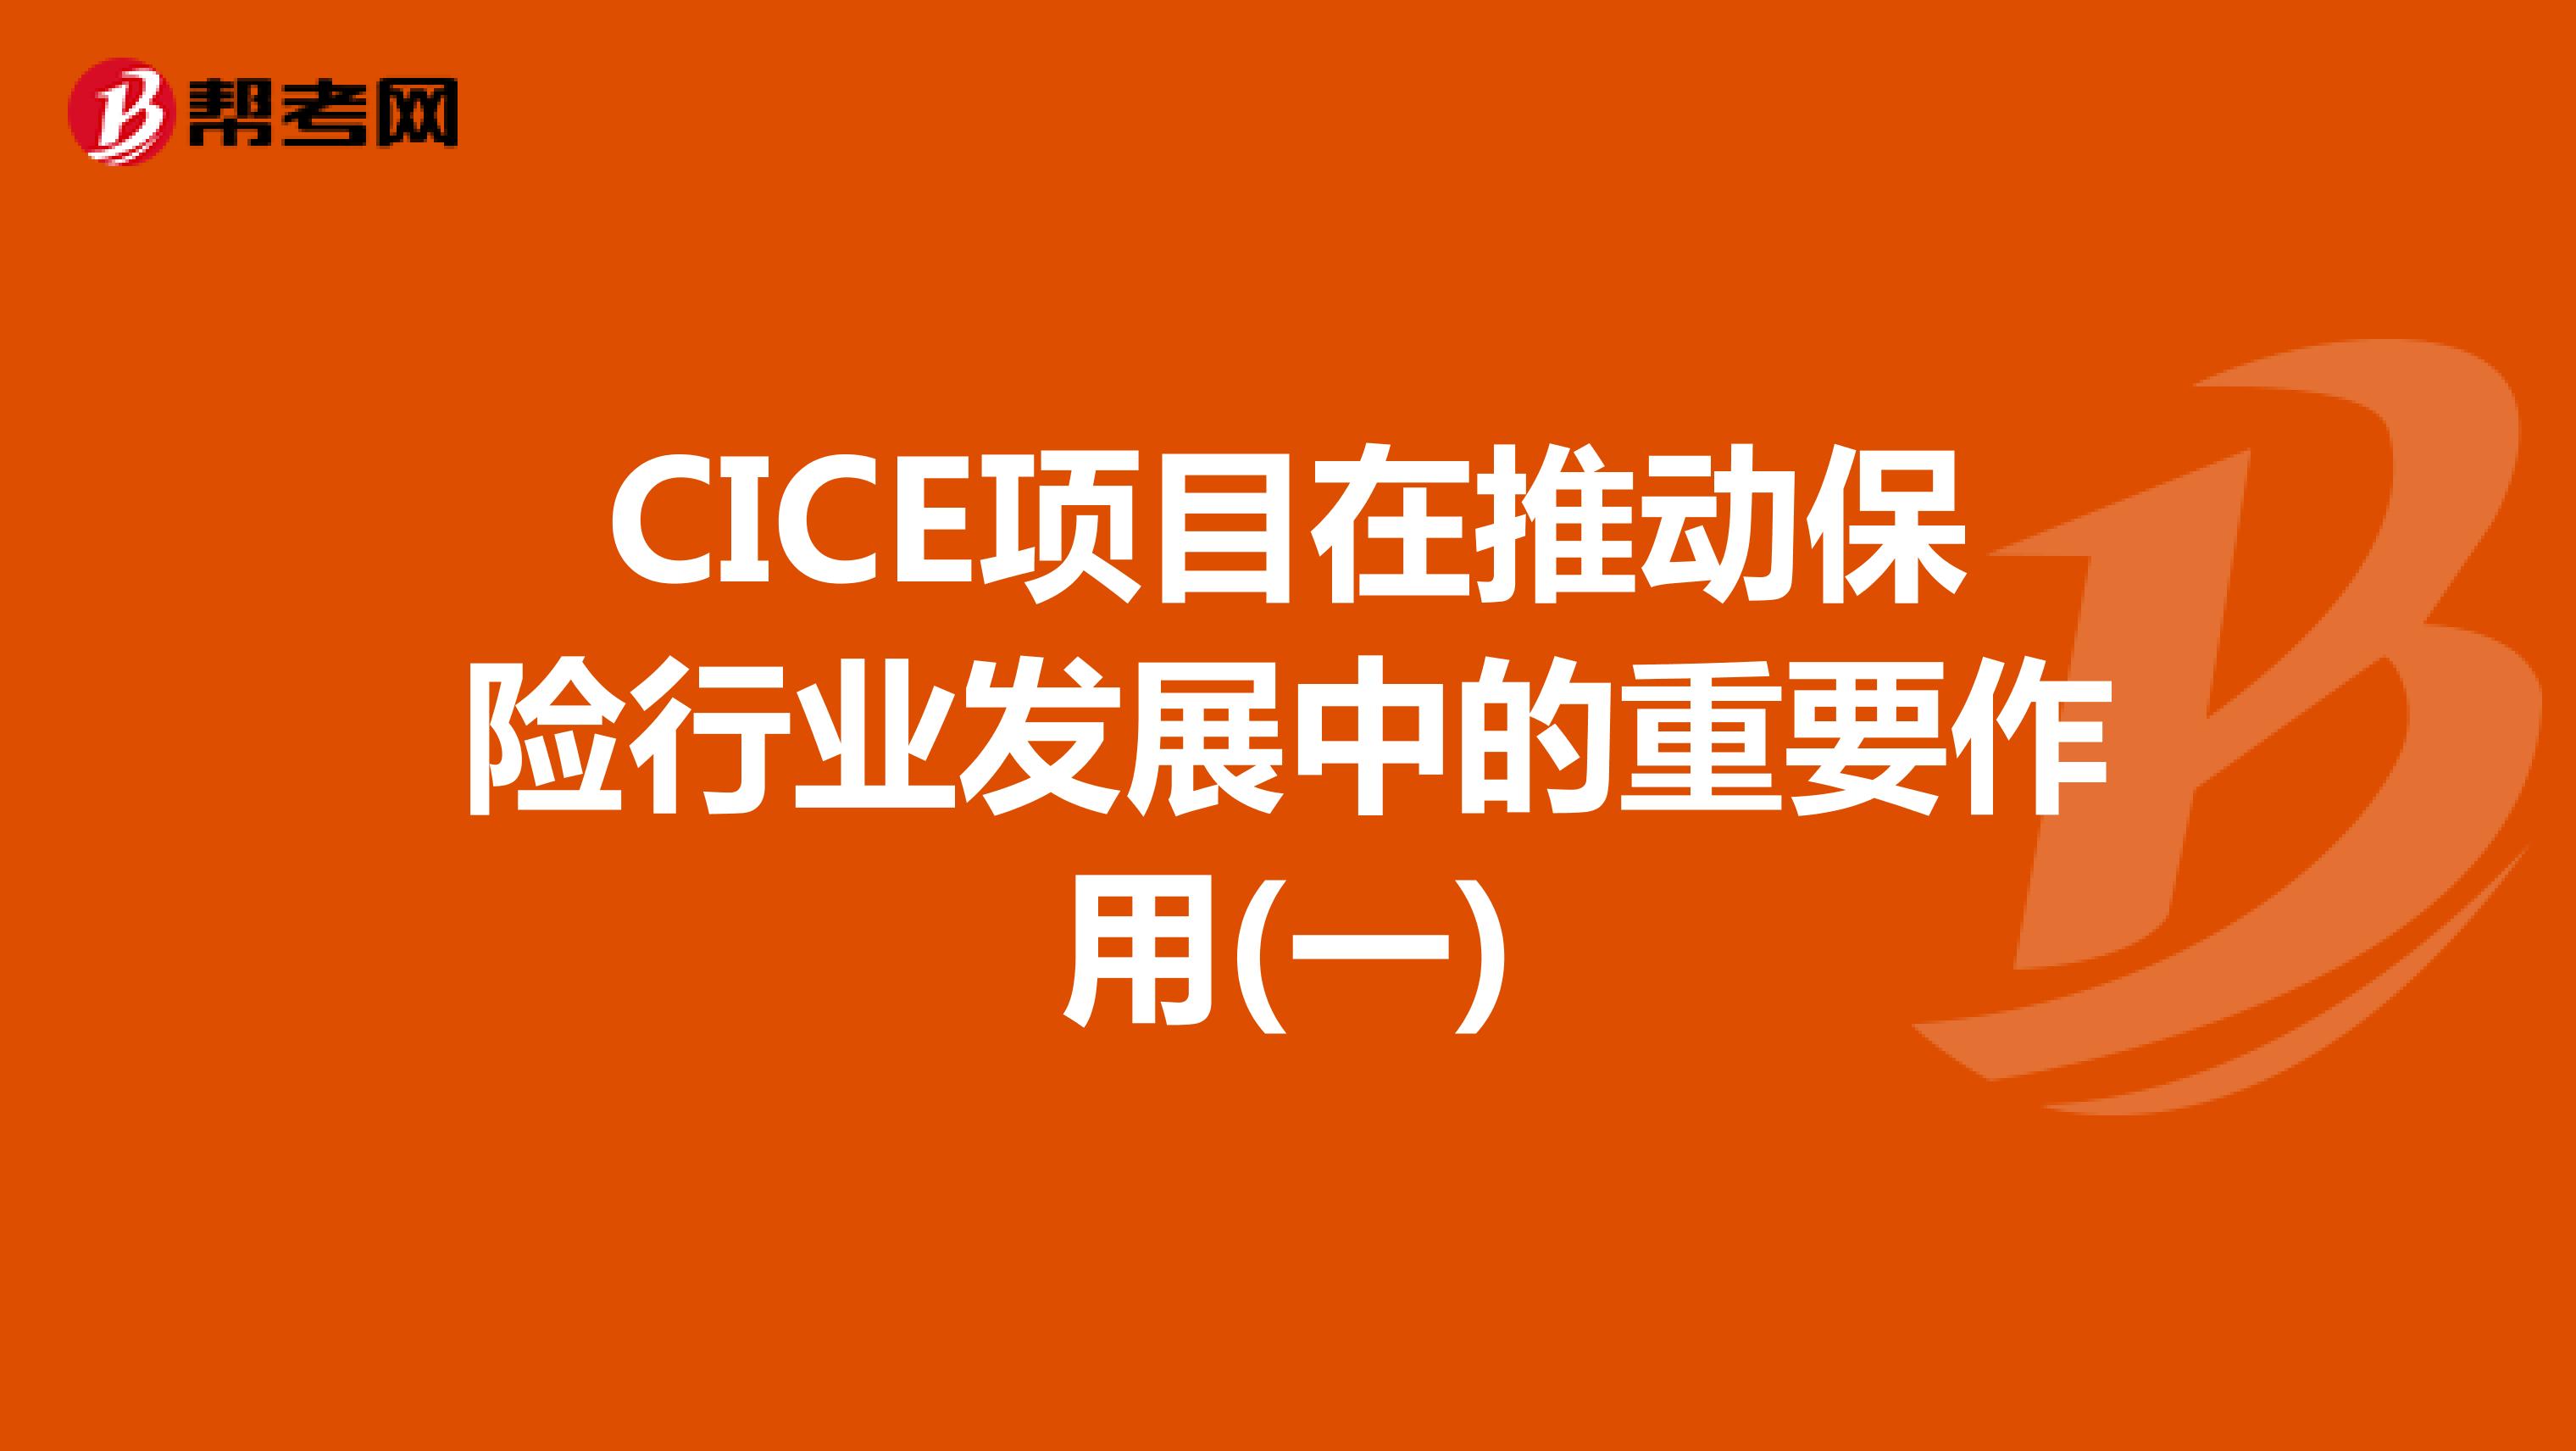 CICE项目在推动保险行业发展中的重要作用(一)